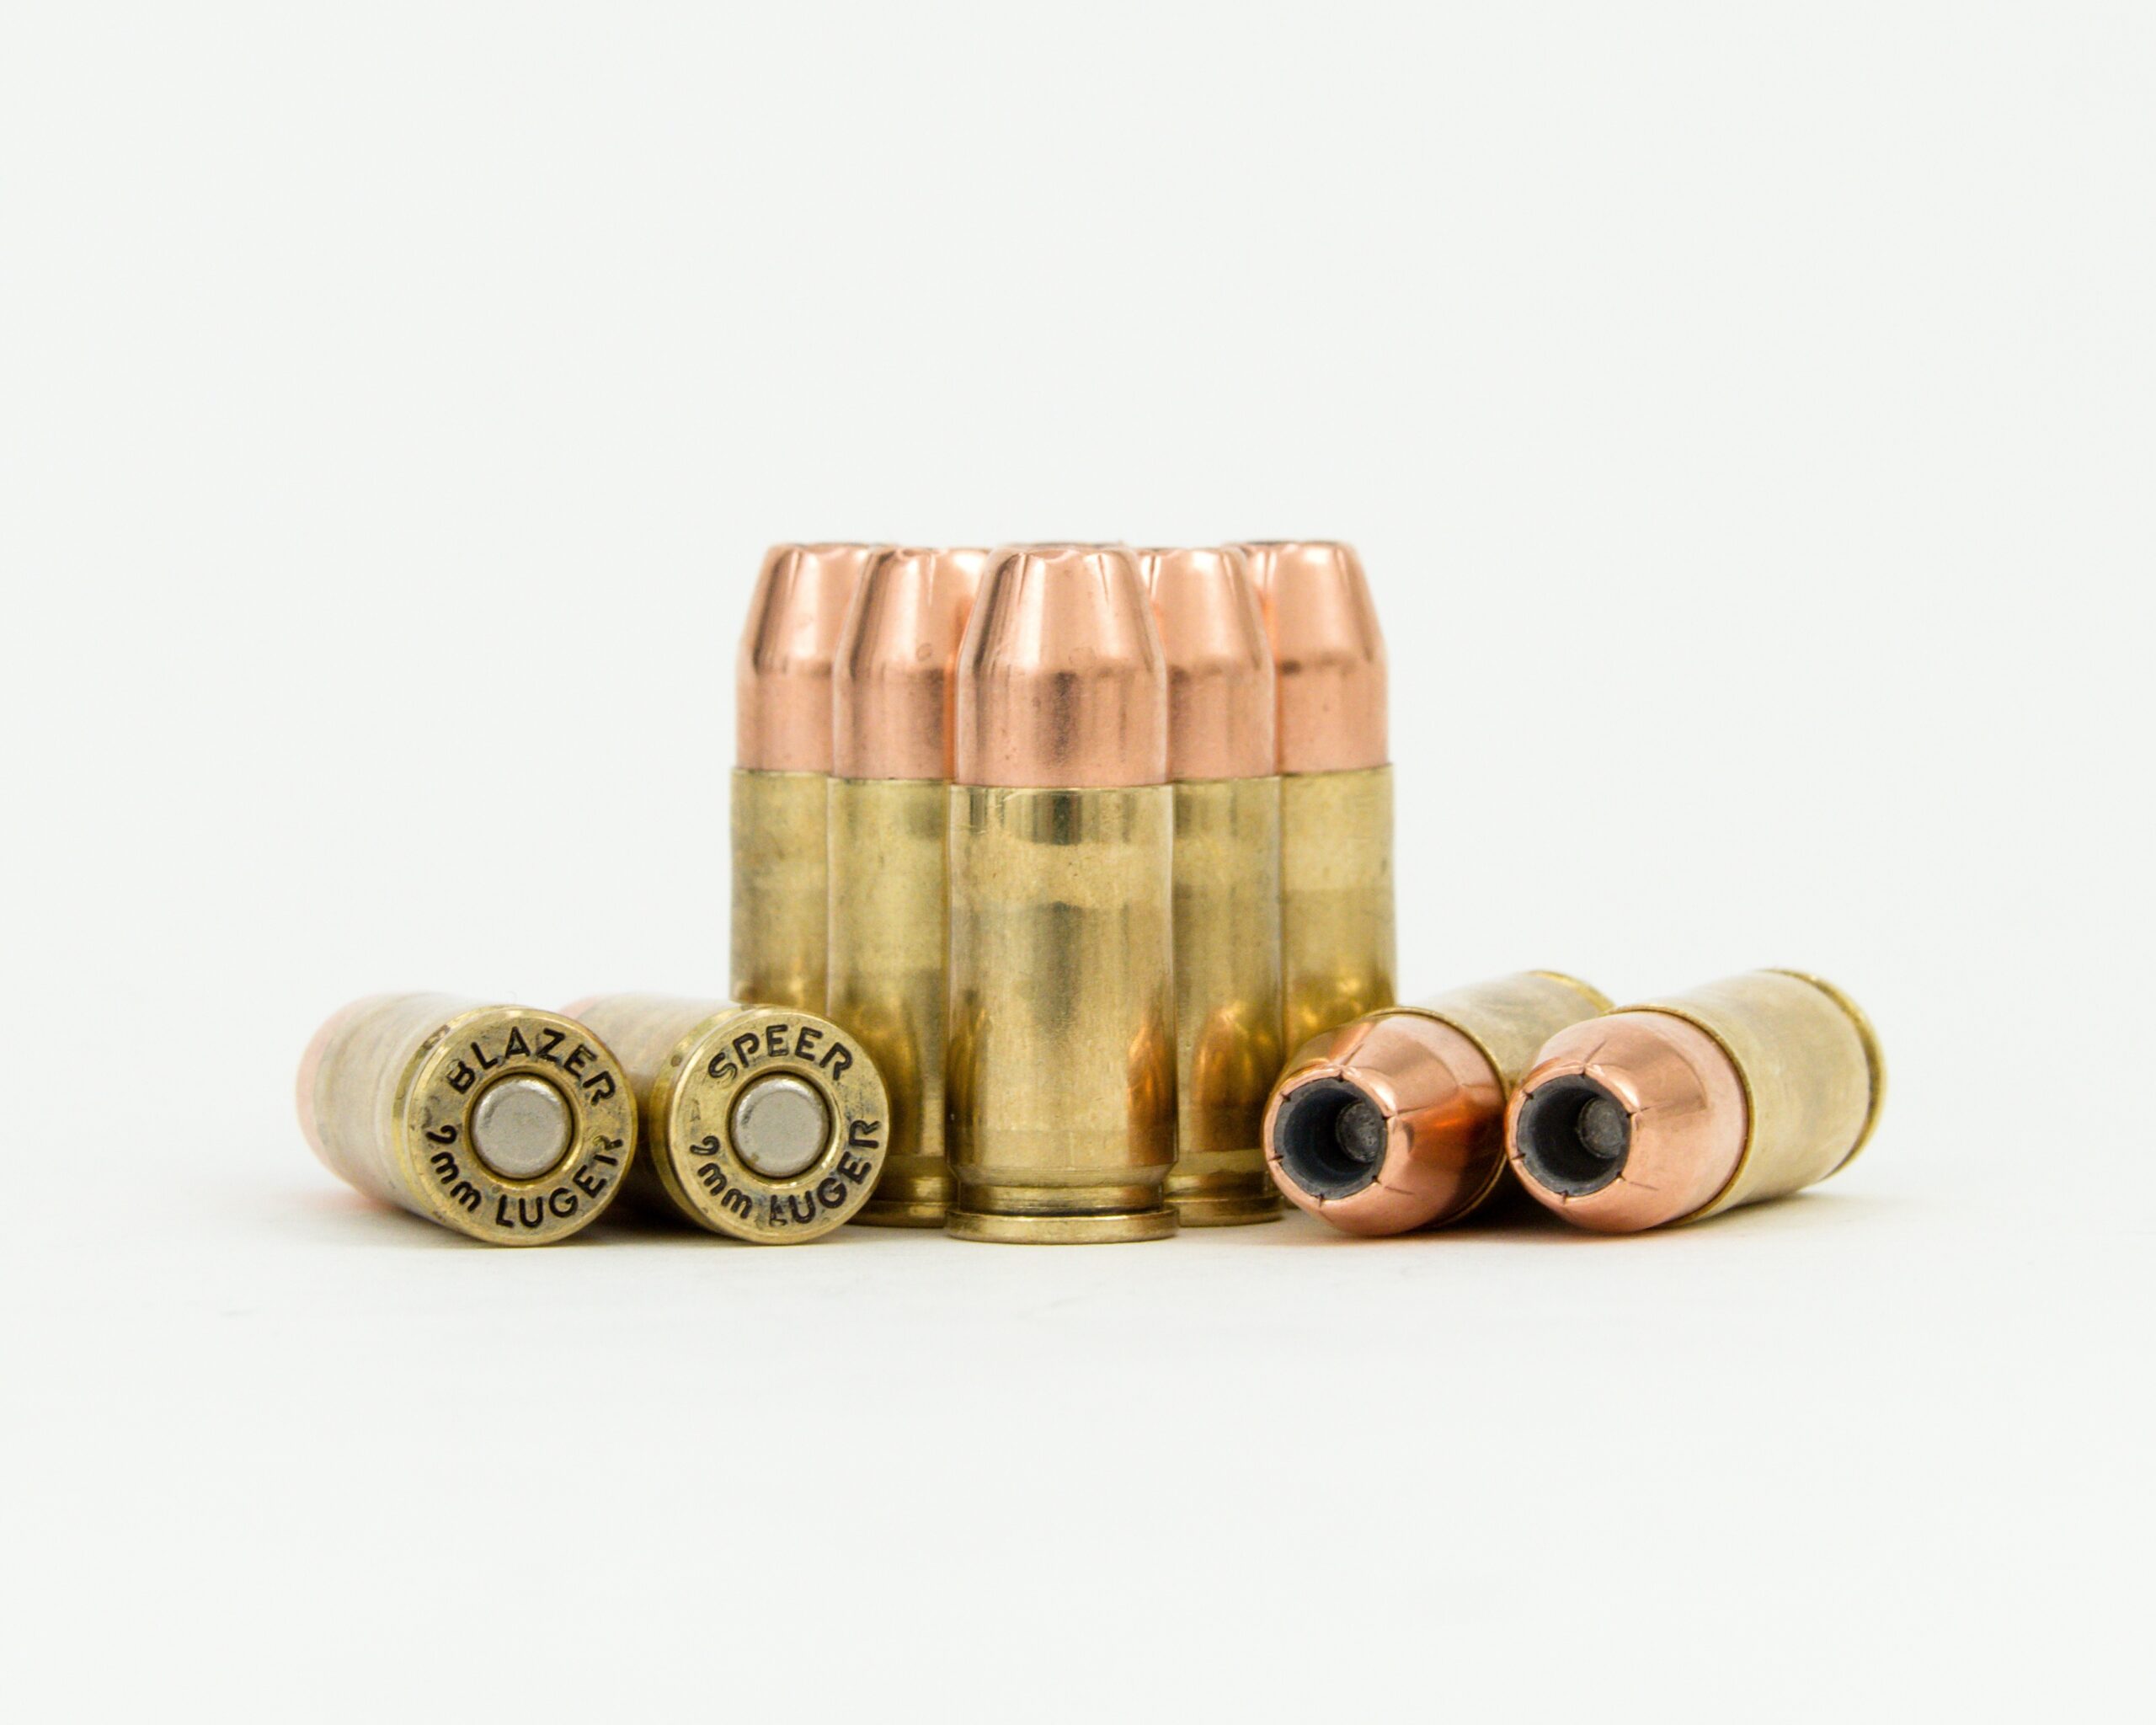 9mm ammunition for home defense